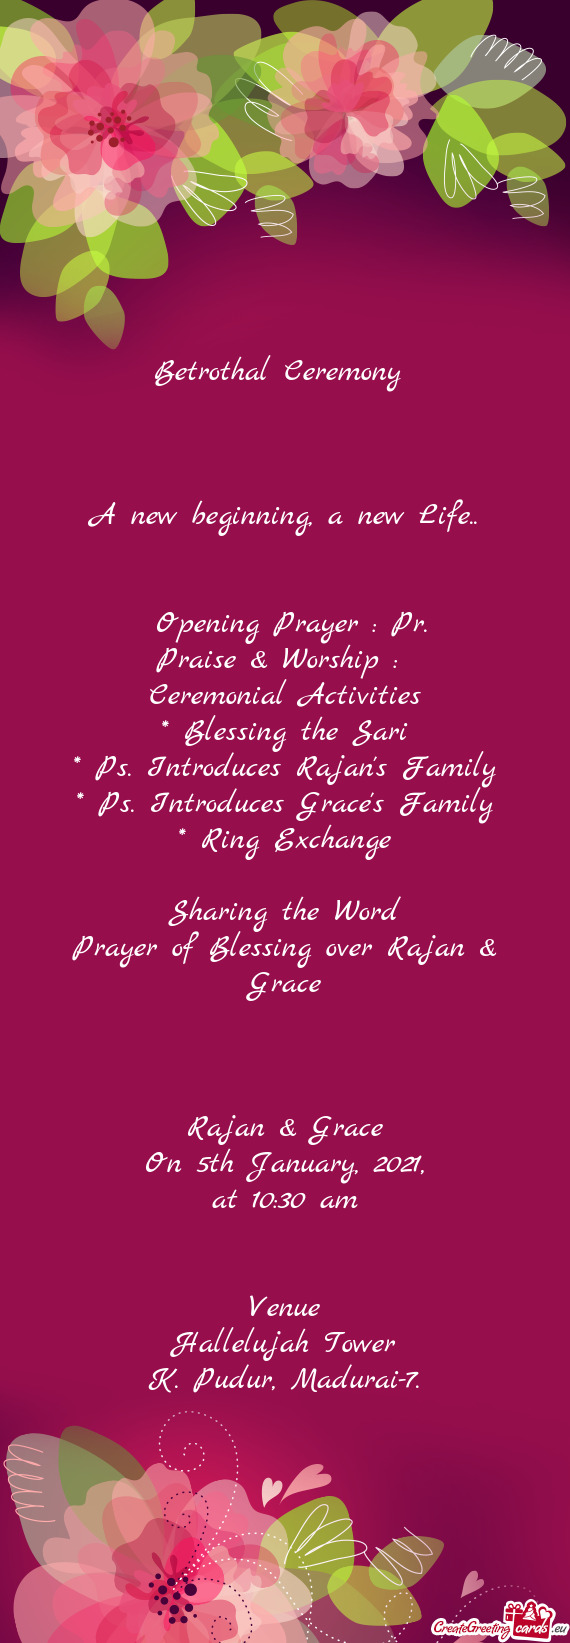 Praise & Worship :